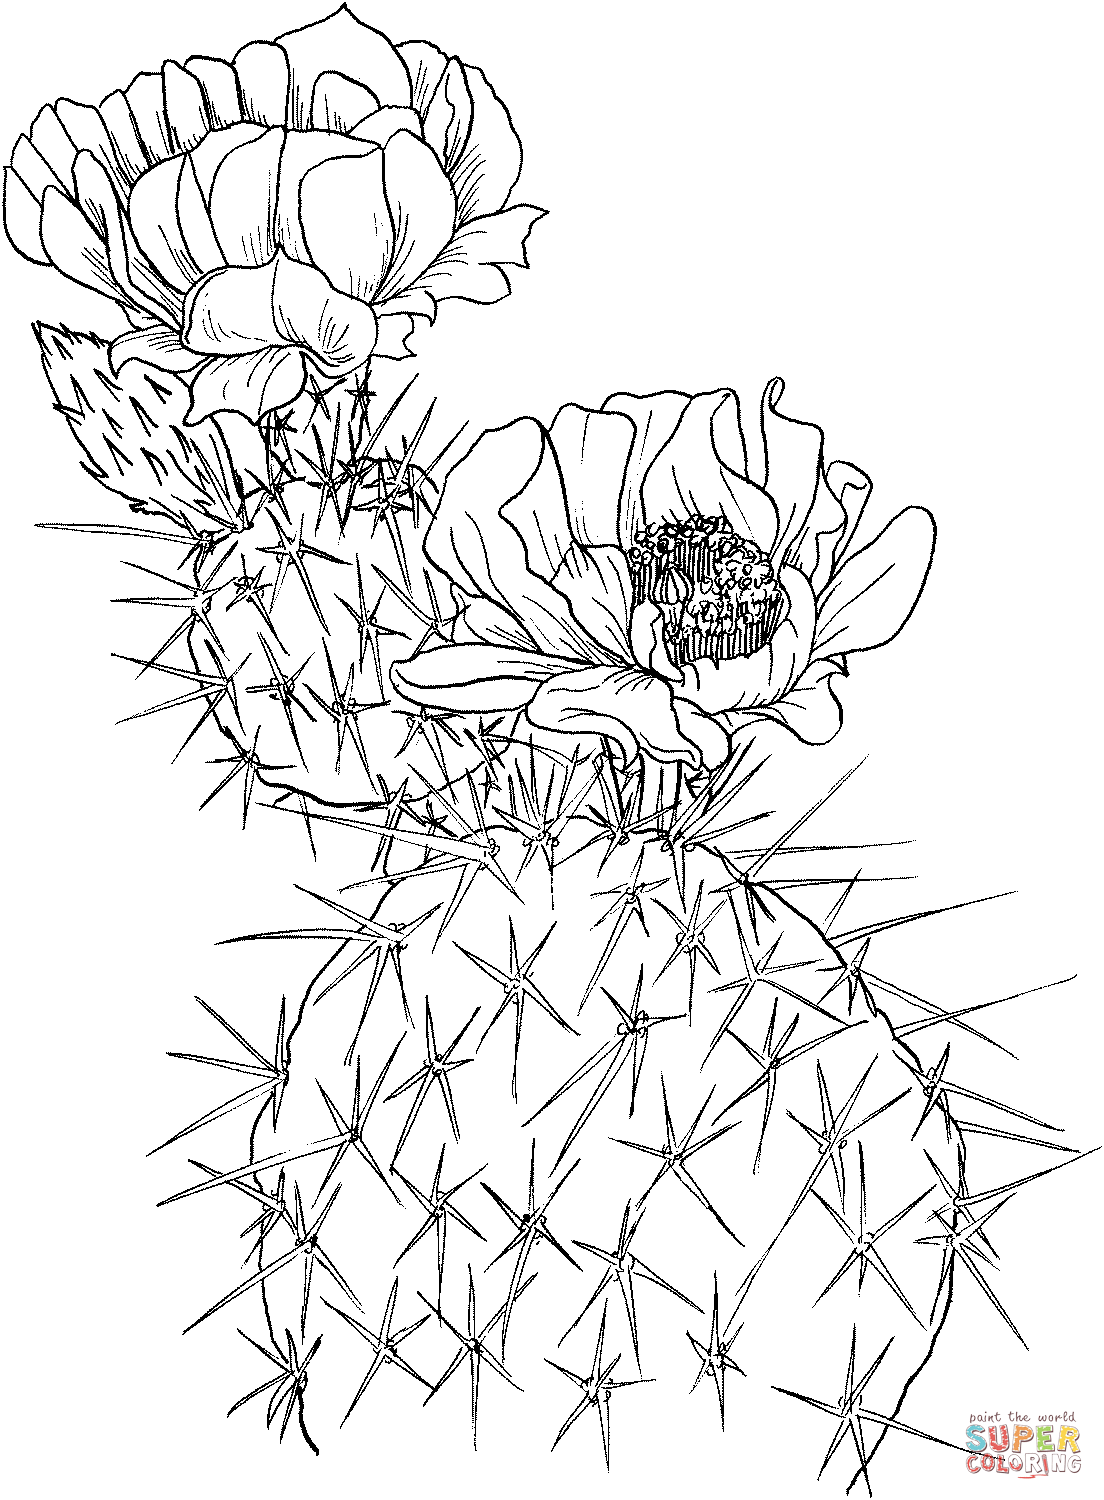 Opuntia nopal oder Feigenkaktus von Cactus